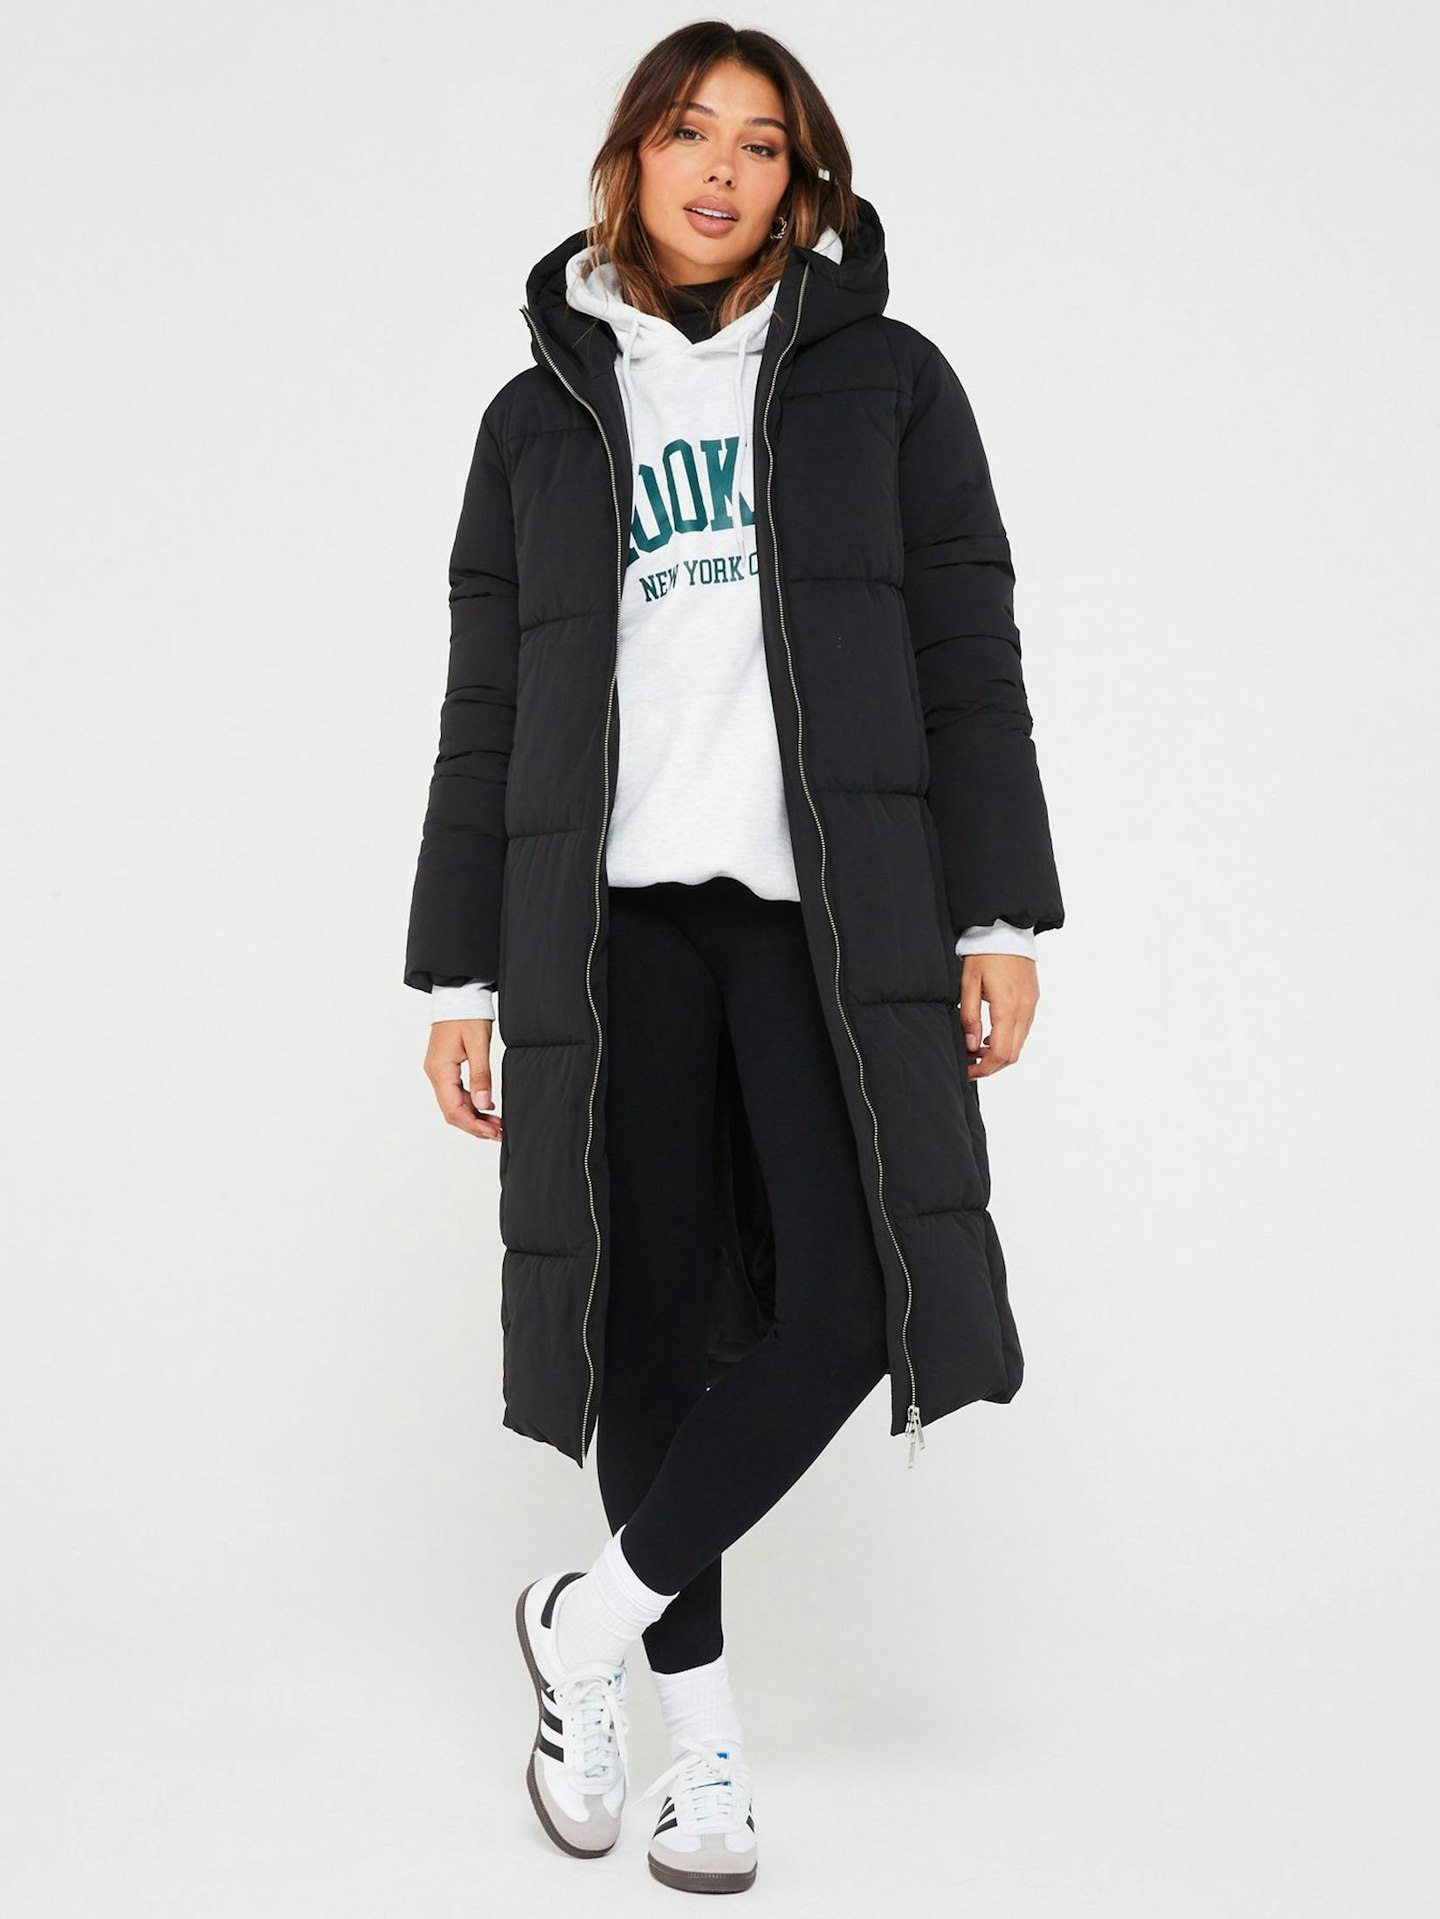 Model wearing black longline puffer coat